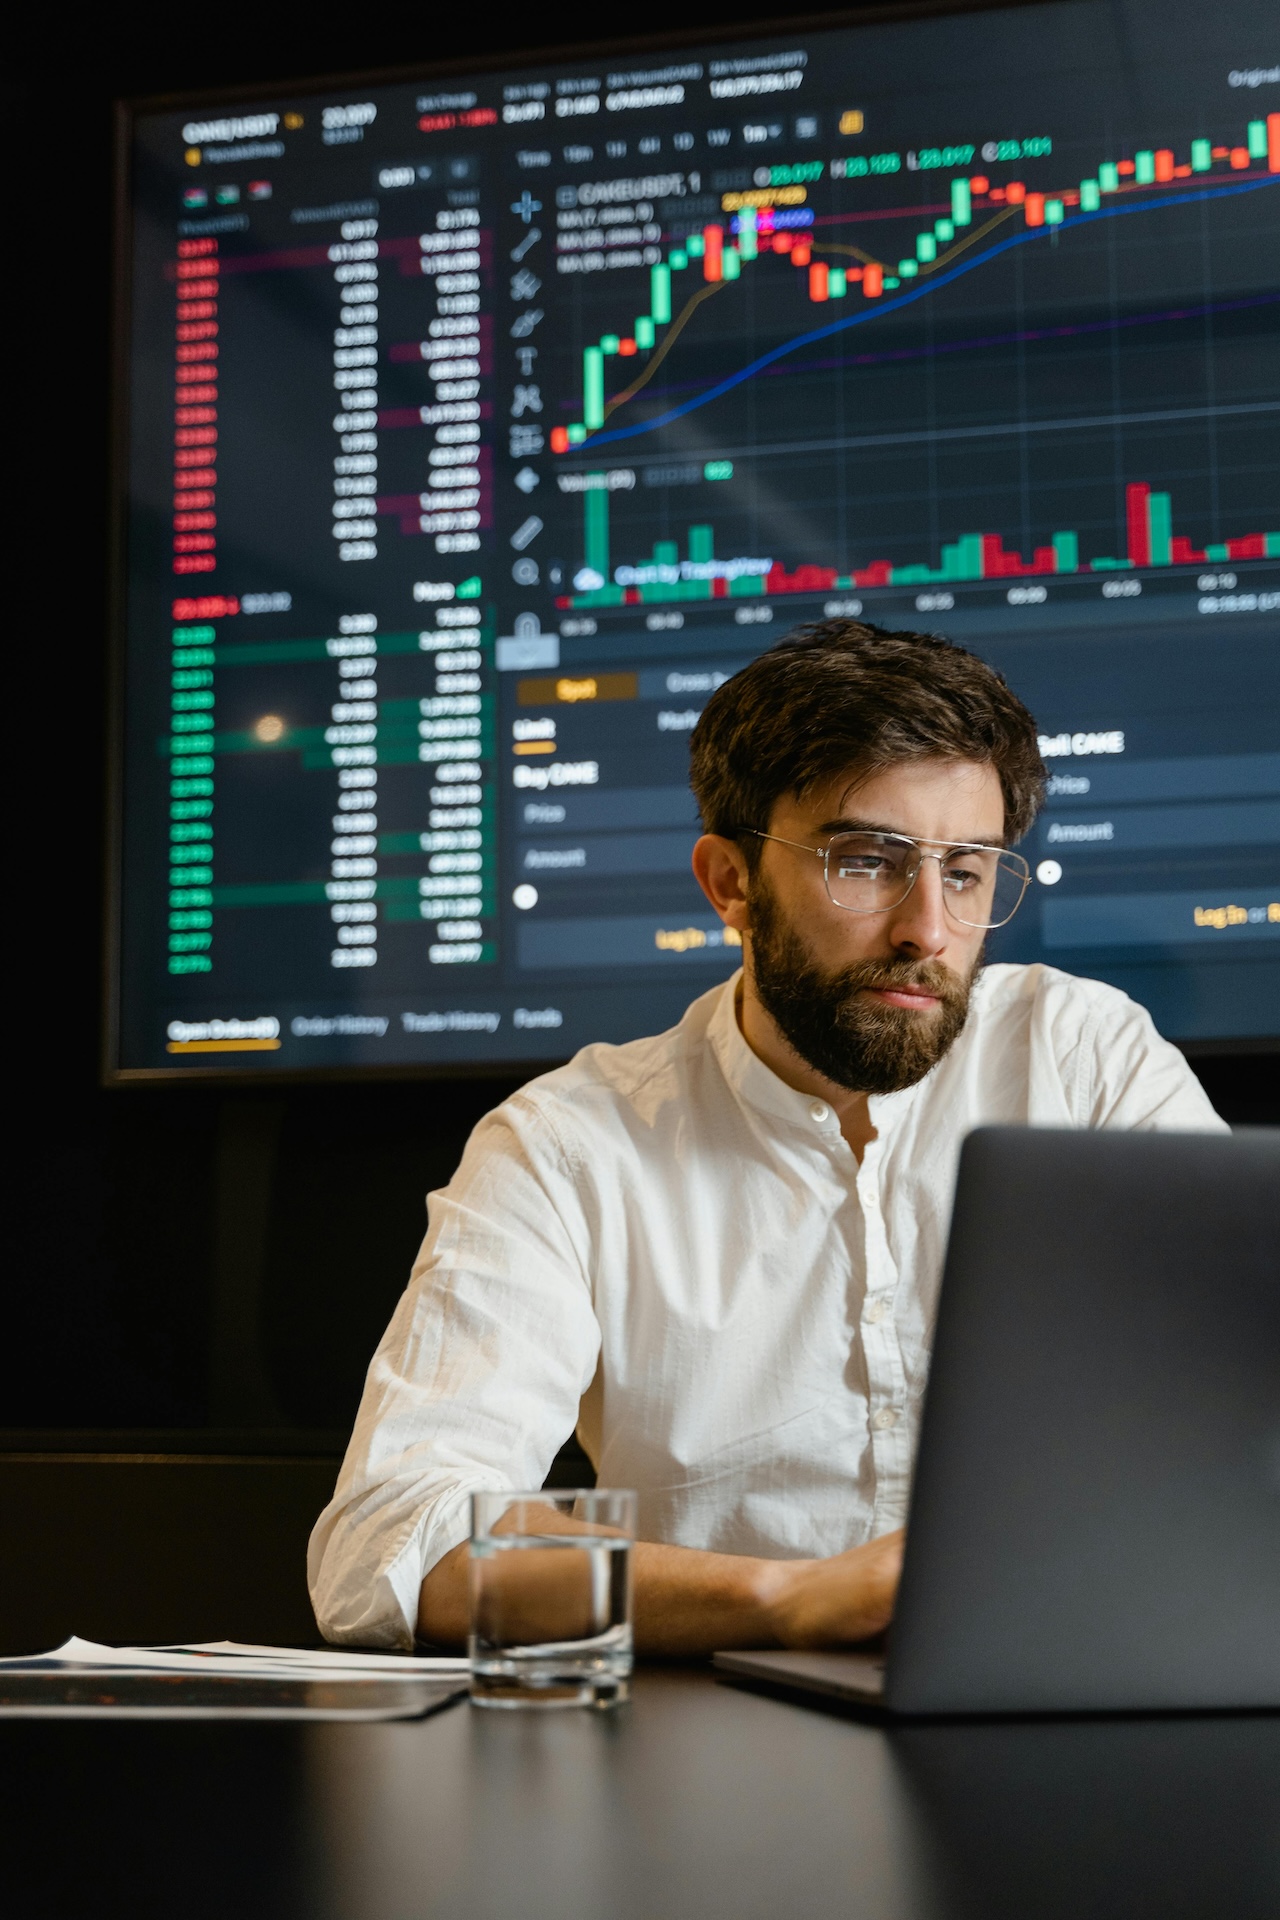 Männer vor Laptop mit Börsenkurve im Hintergrund